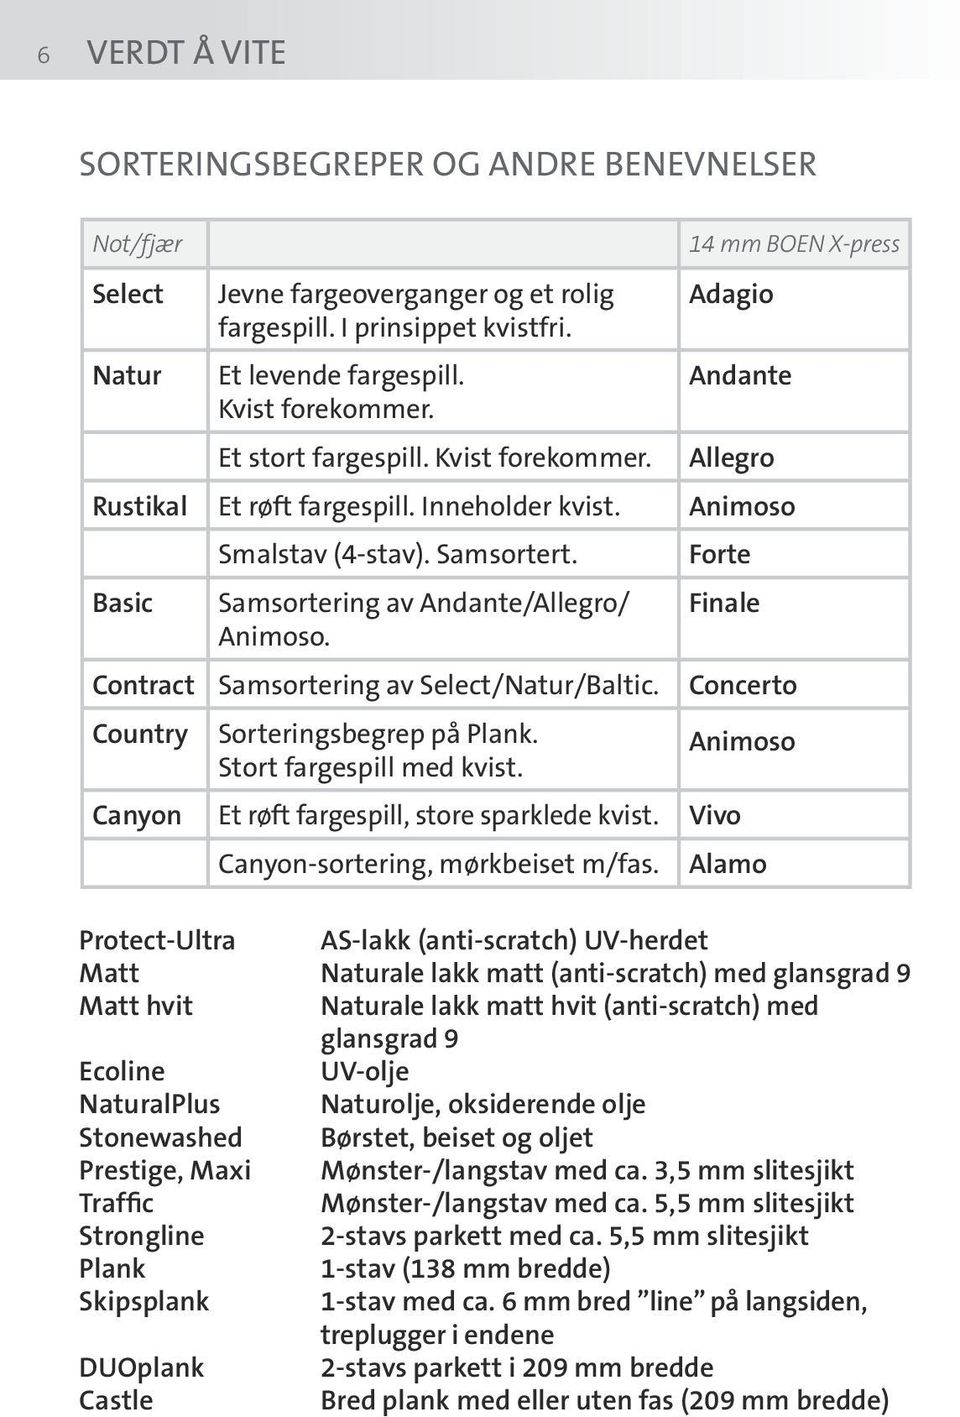 Forte Basic Samsortering av Andante/Allegro/ Finale Animoso. Contract Samsortering av Select/Natur/Baltic. Concerto Country Sorteringsbegrep på Plank. Stort fargespill med kvist.